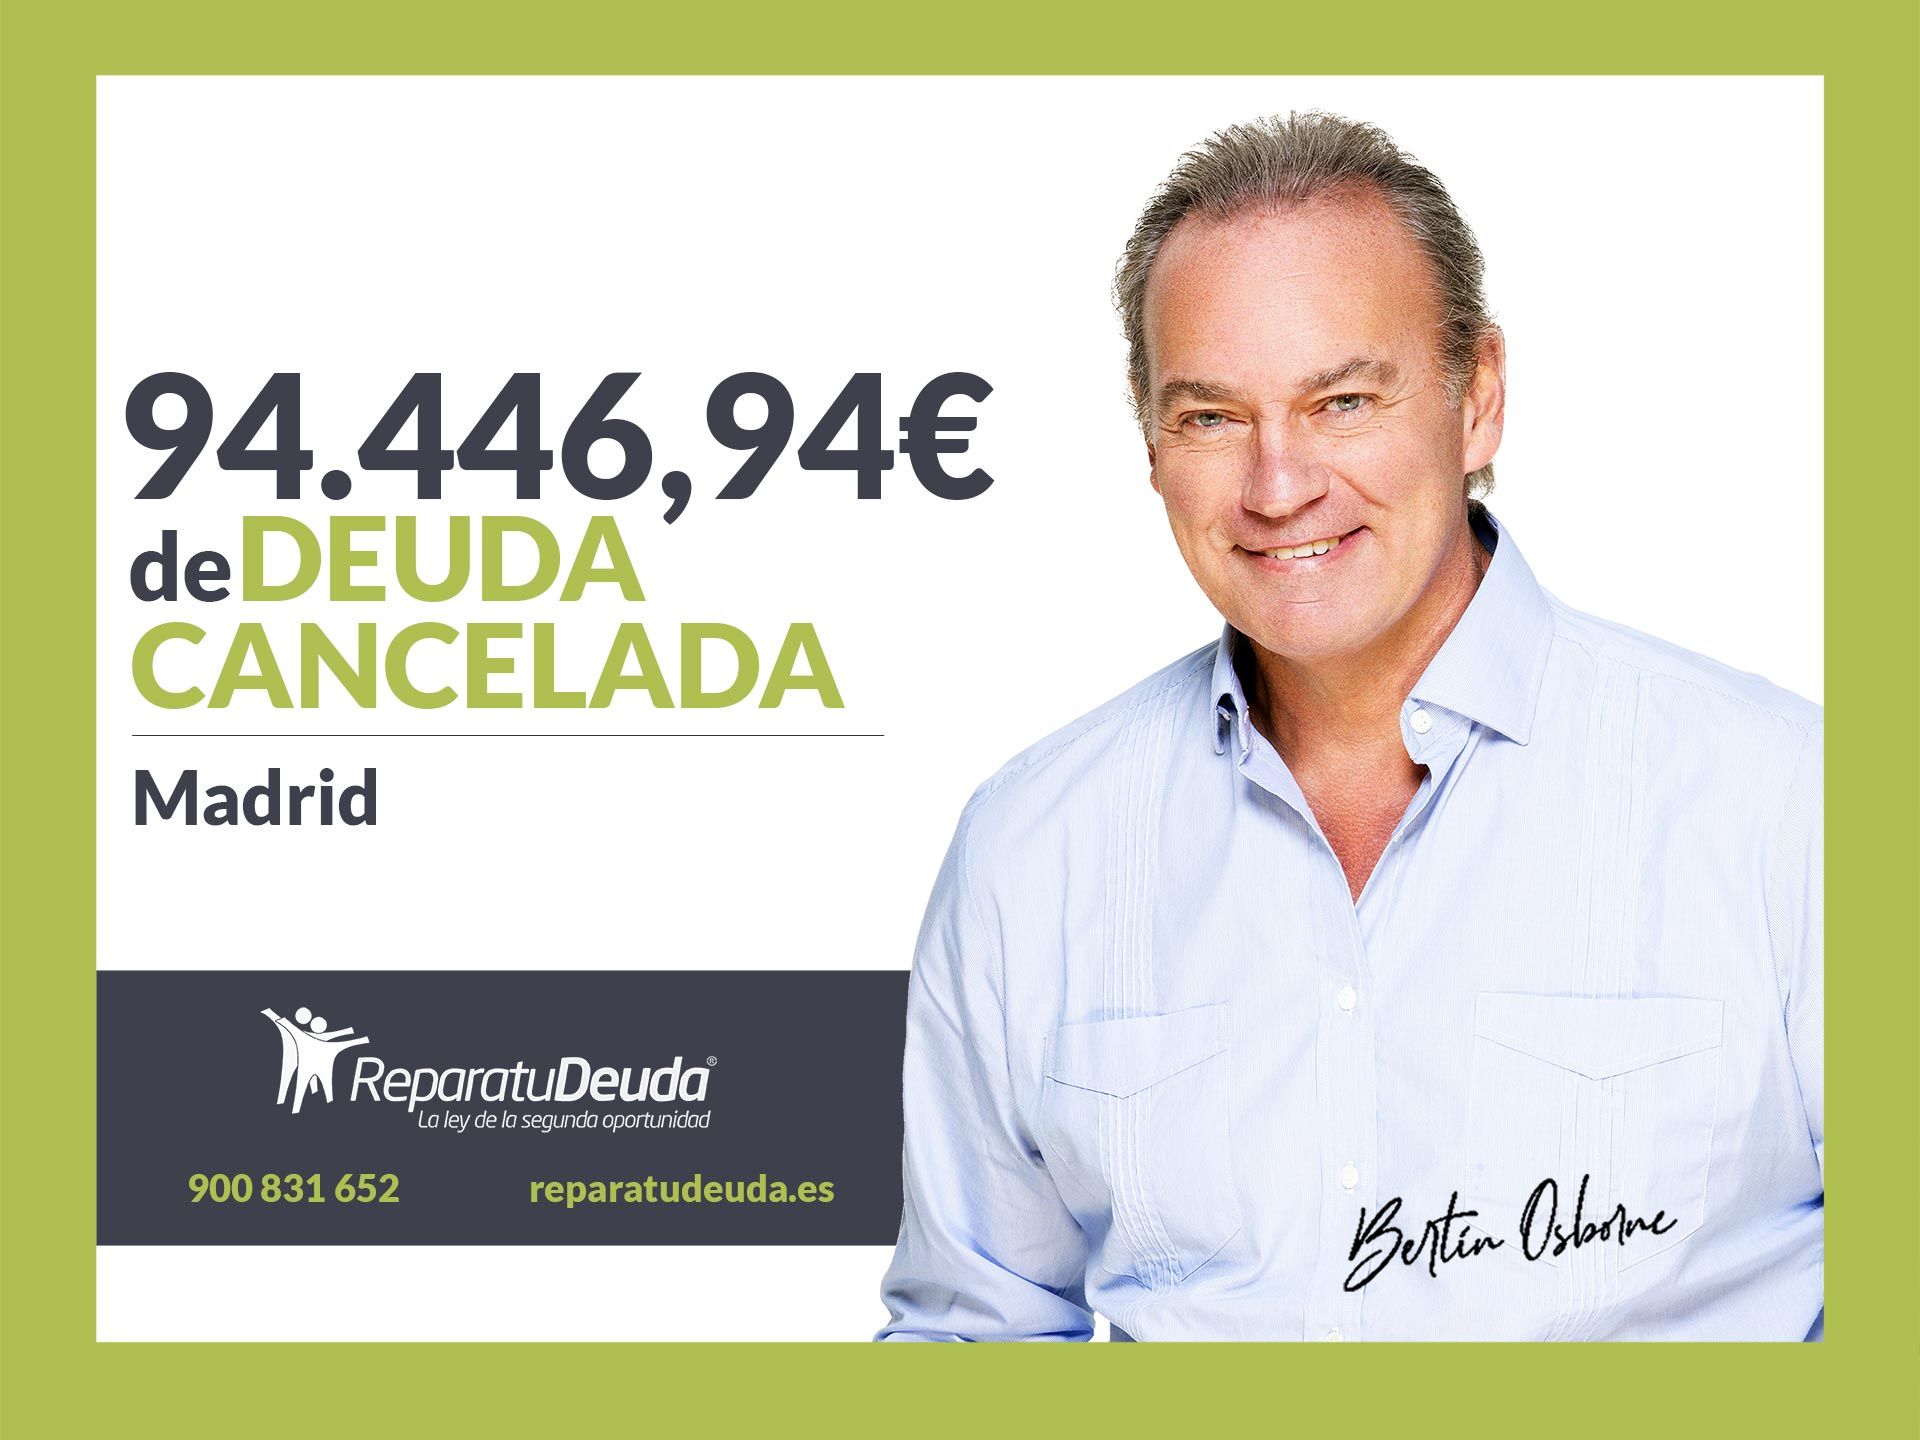 Repara tu Deuda Abogados cancela 94.446,94? en Madrid con la Ley de Segunda Oportunidad